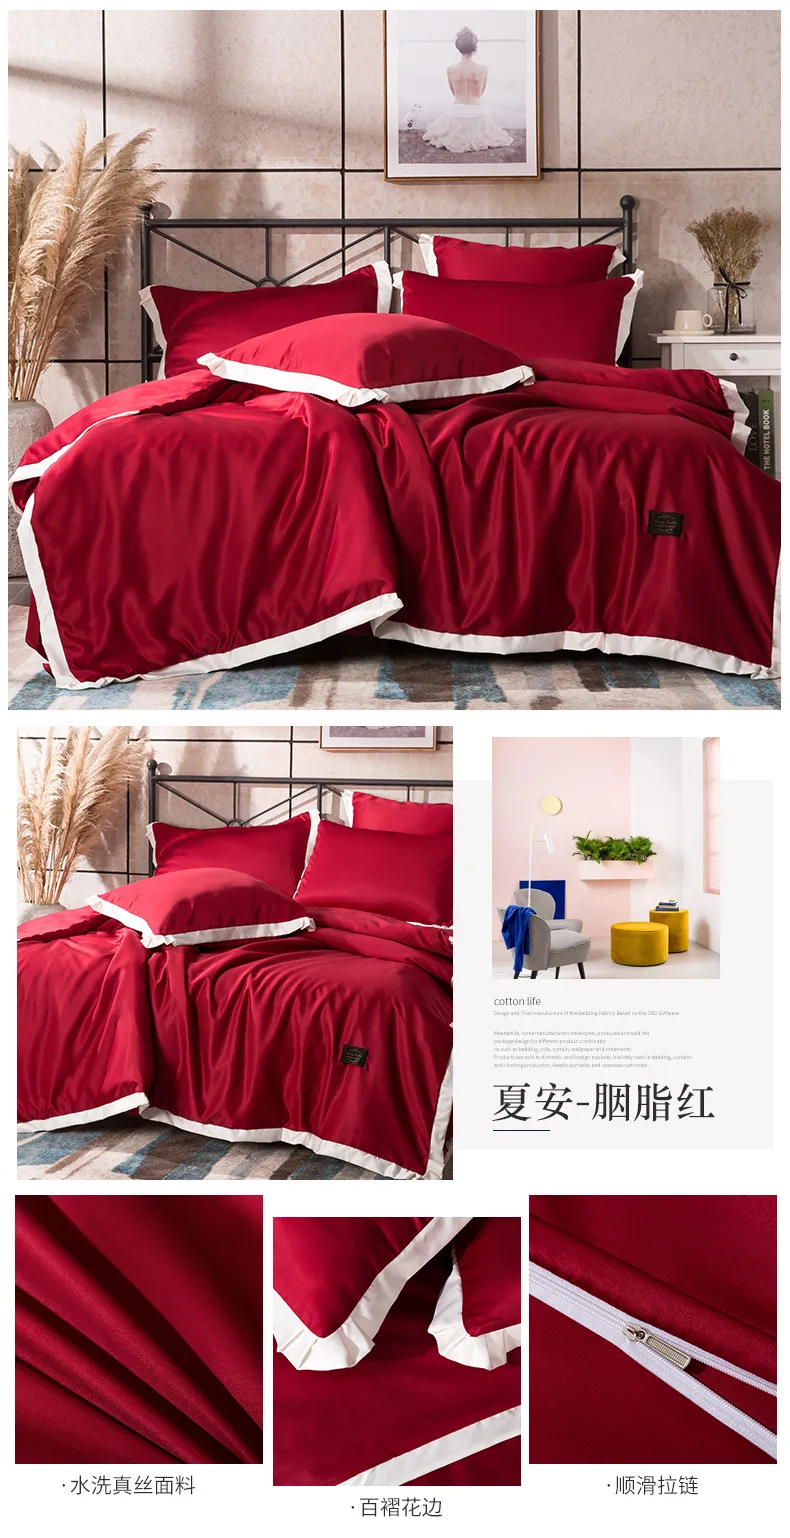 Шелковый однотонный пуховый набор одеял большого размера, спальный комплект, комплект постельного белья, панхроматический роскошный стираный комплект шелковых одеял, набор подушек, 4 шт